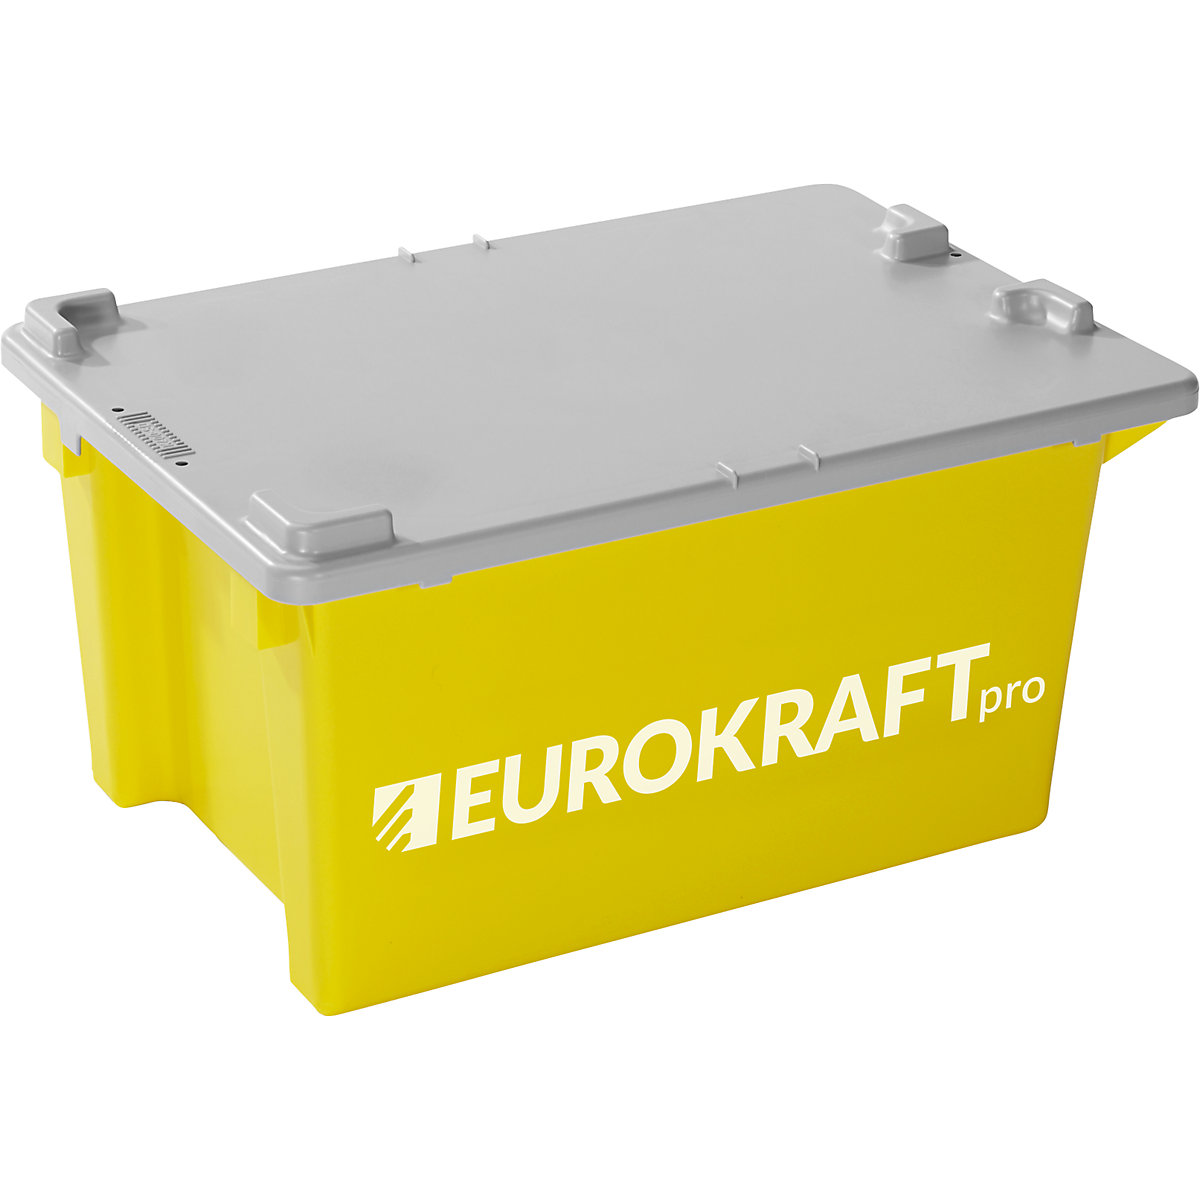 Recipiente empilhável giratório – eurokraft pro (Imagem do produto 2)-1